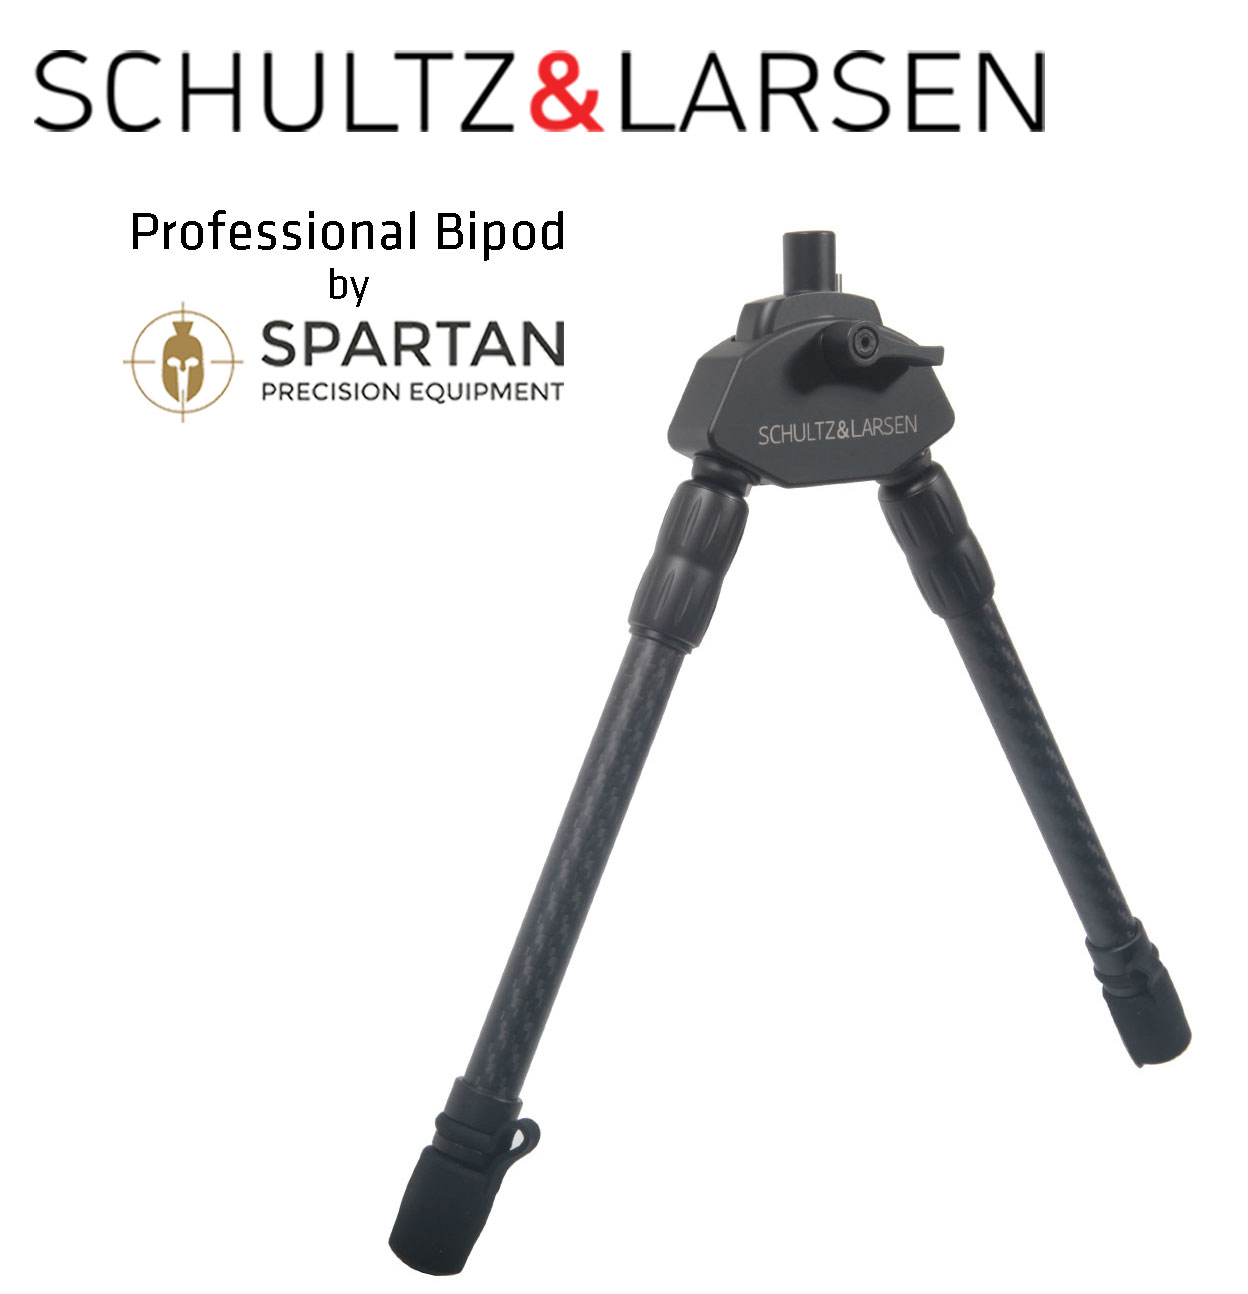 Schultz & Larsen Spartan Bipod